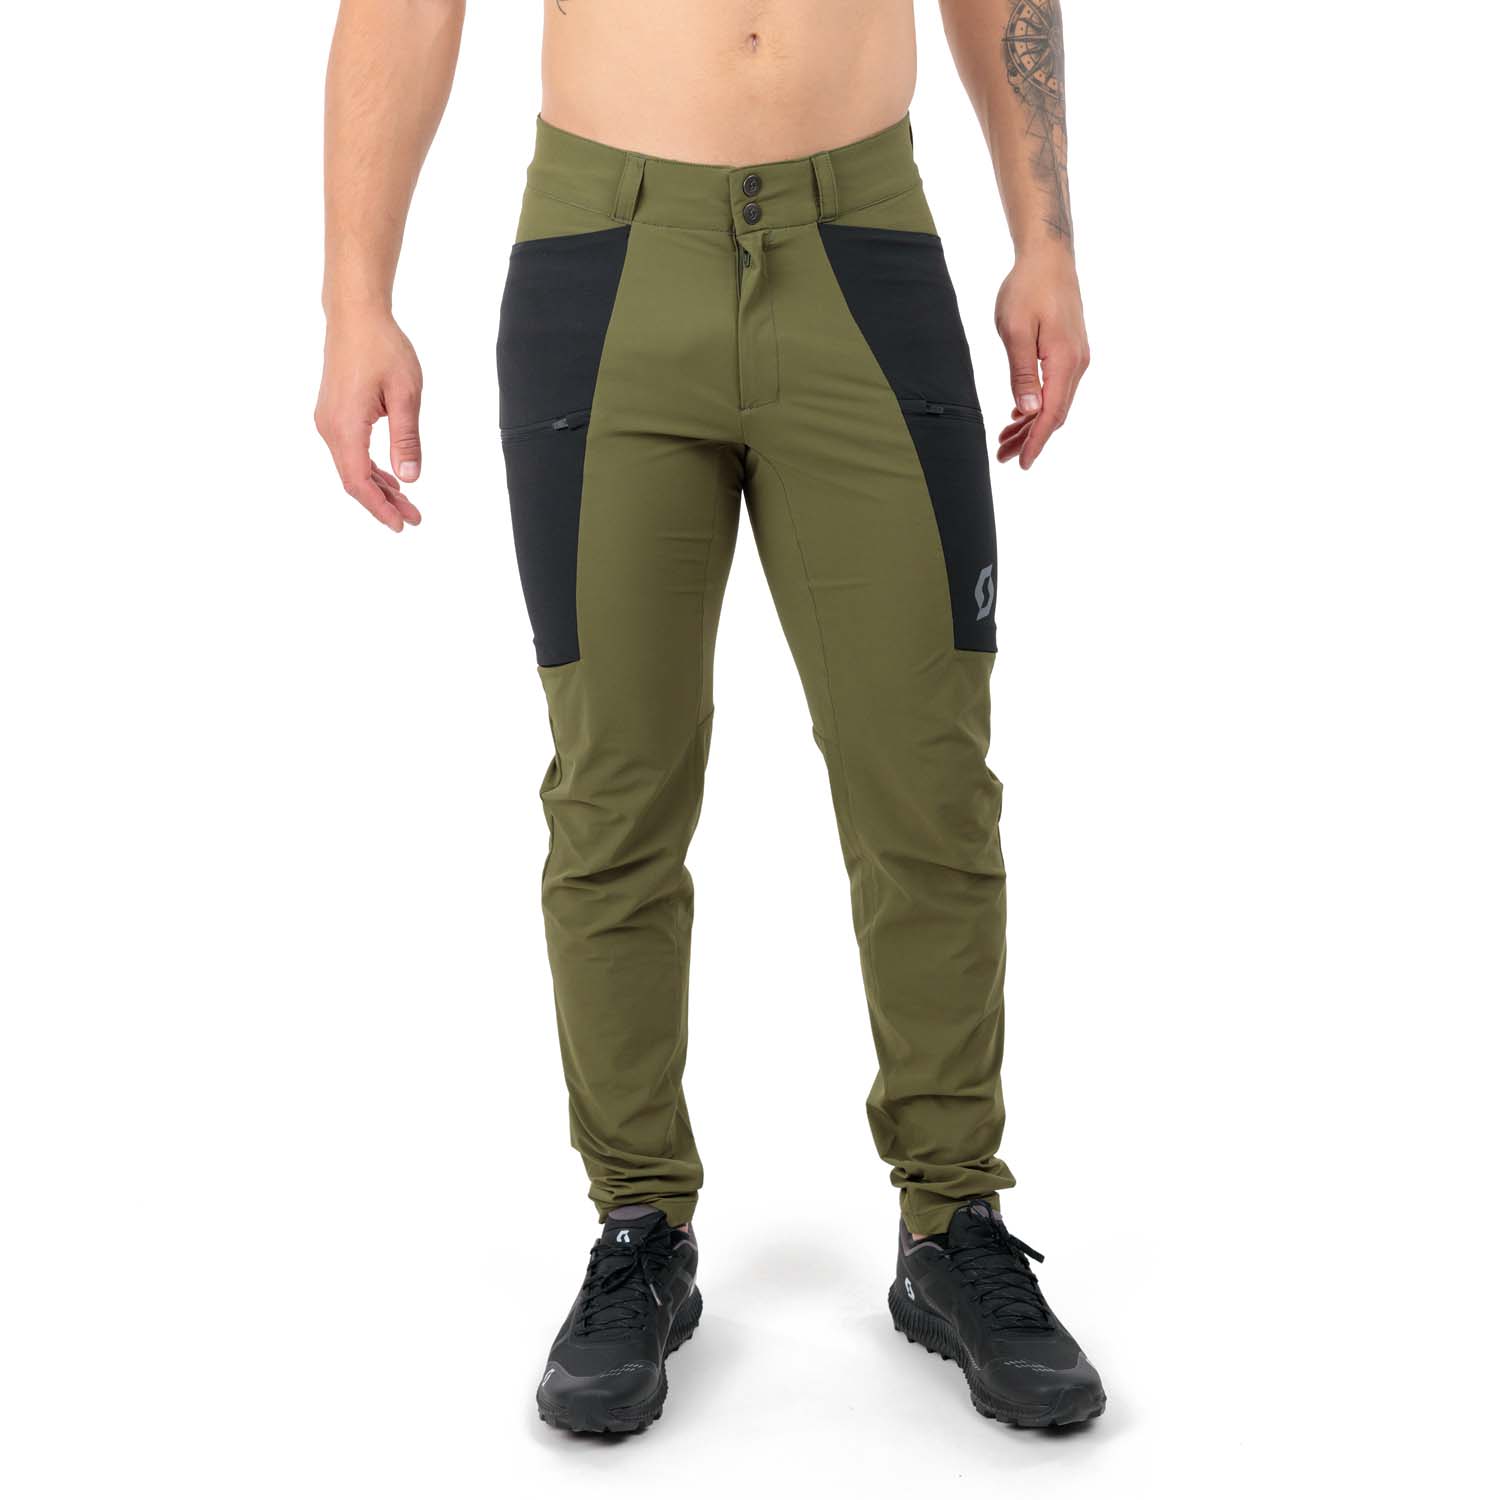 Scott Explorair Tech Pants - Fir Green/Black